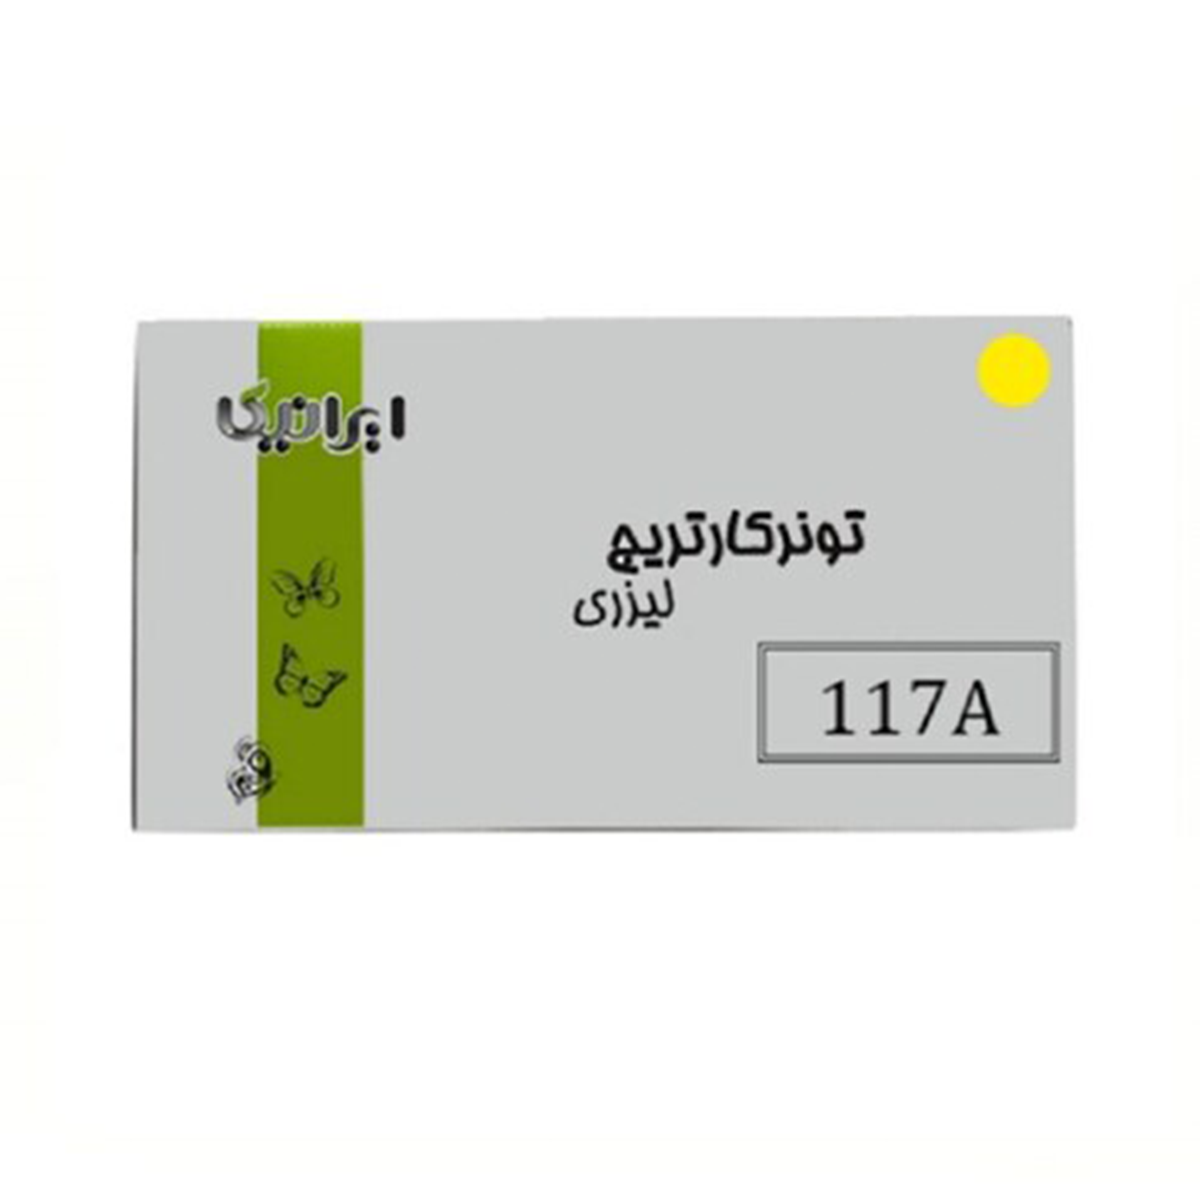 کارتریج ایرانیکا طرح Hp 117AY زرد-زرد